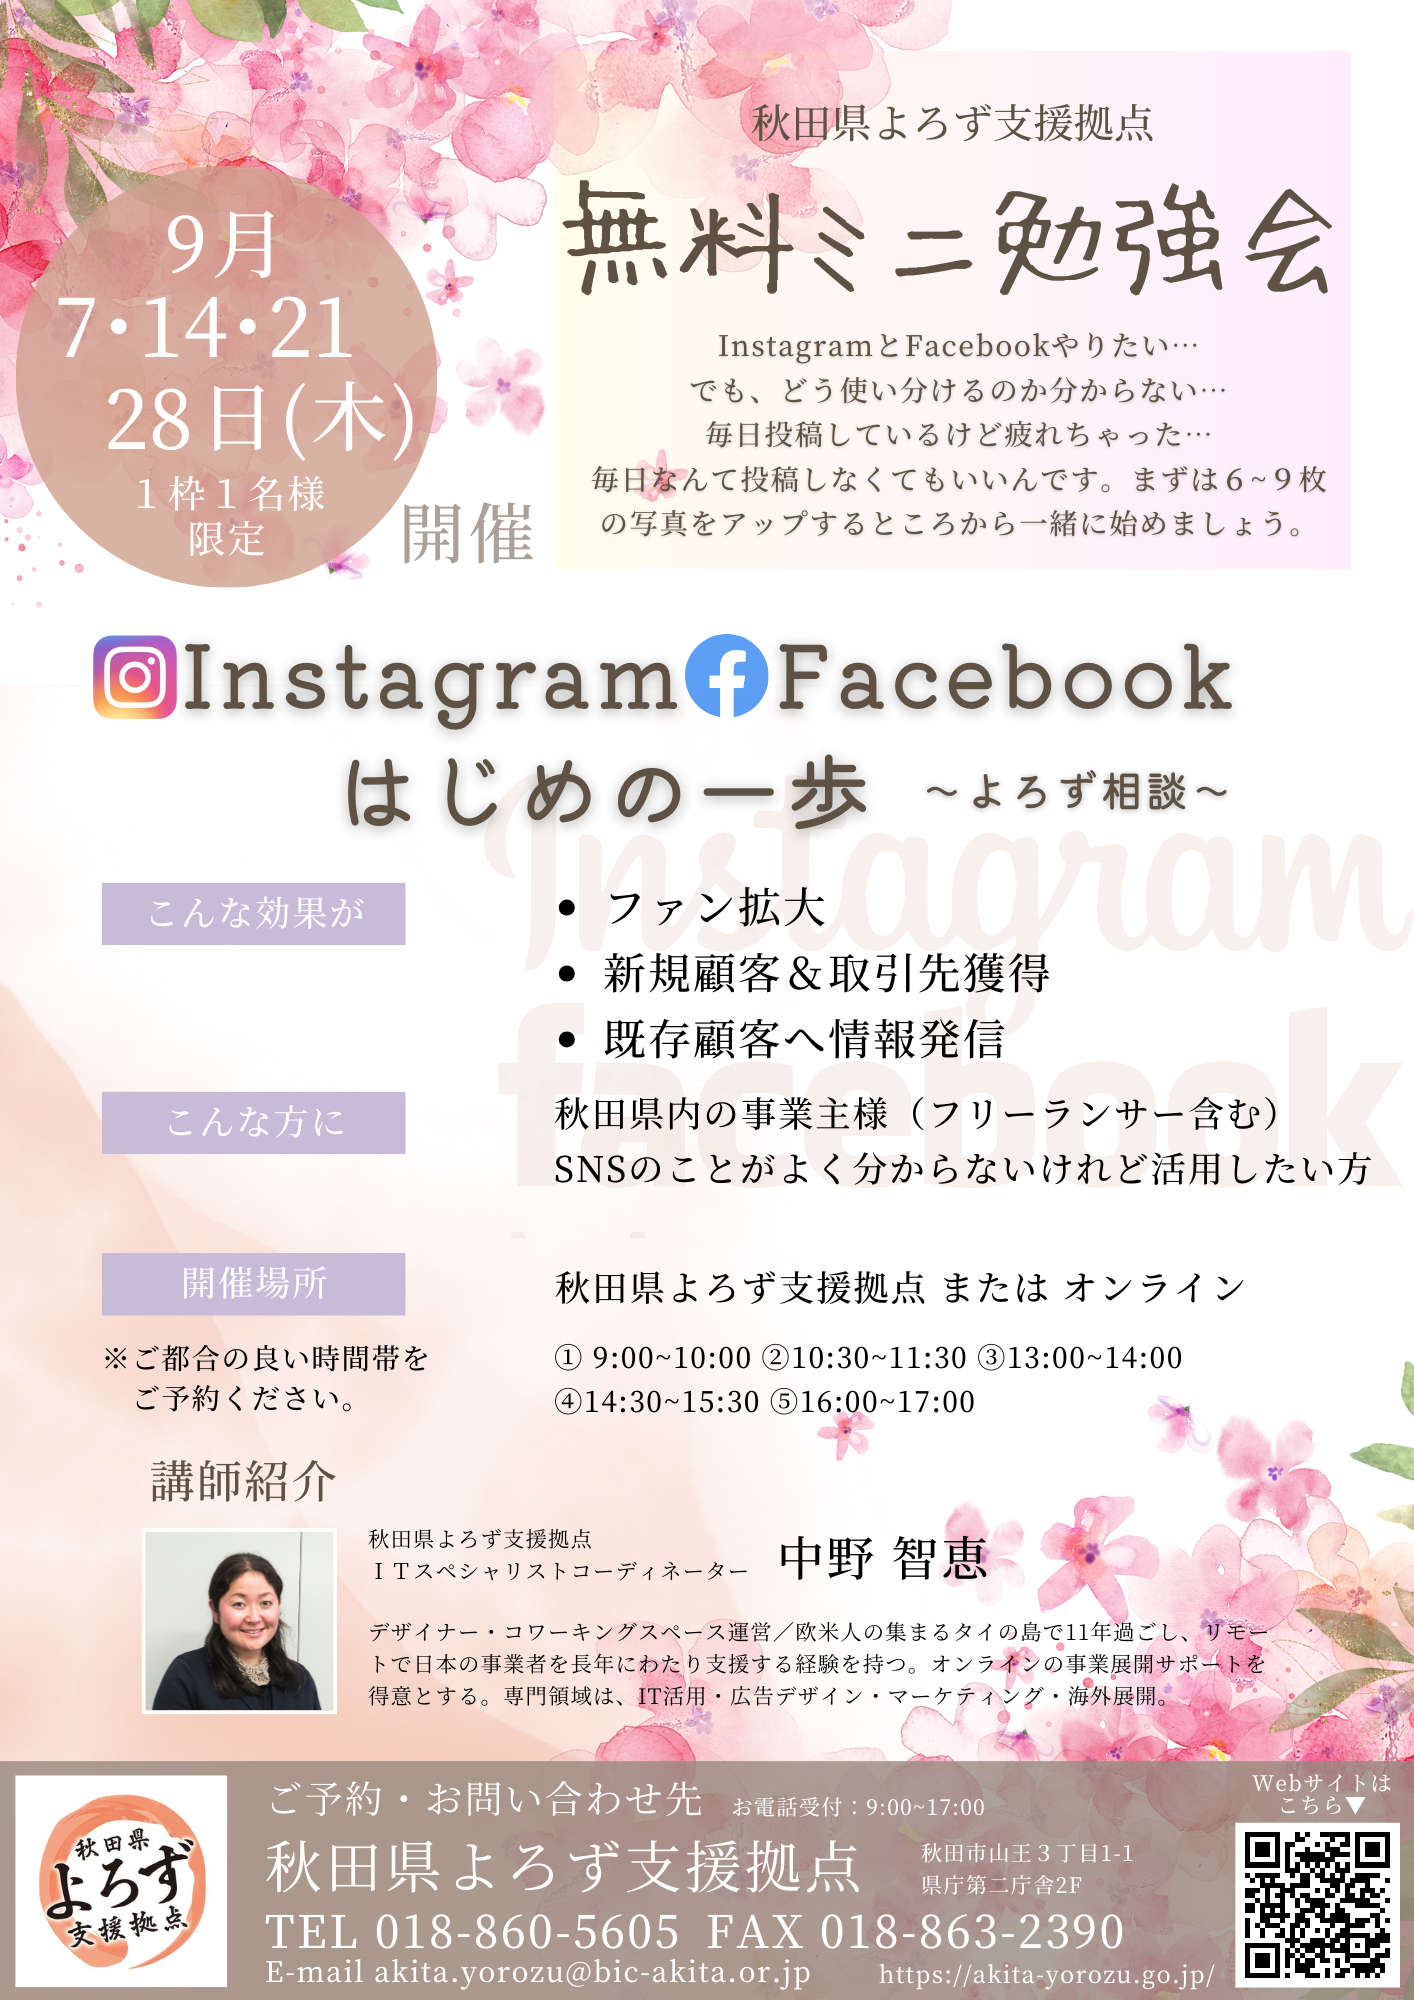 【9月7･14･21･28日開催】ミニ勉強会「Instagram Facebook はじめの一歩 ～よろず相談～」参加者募集中です